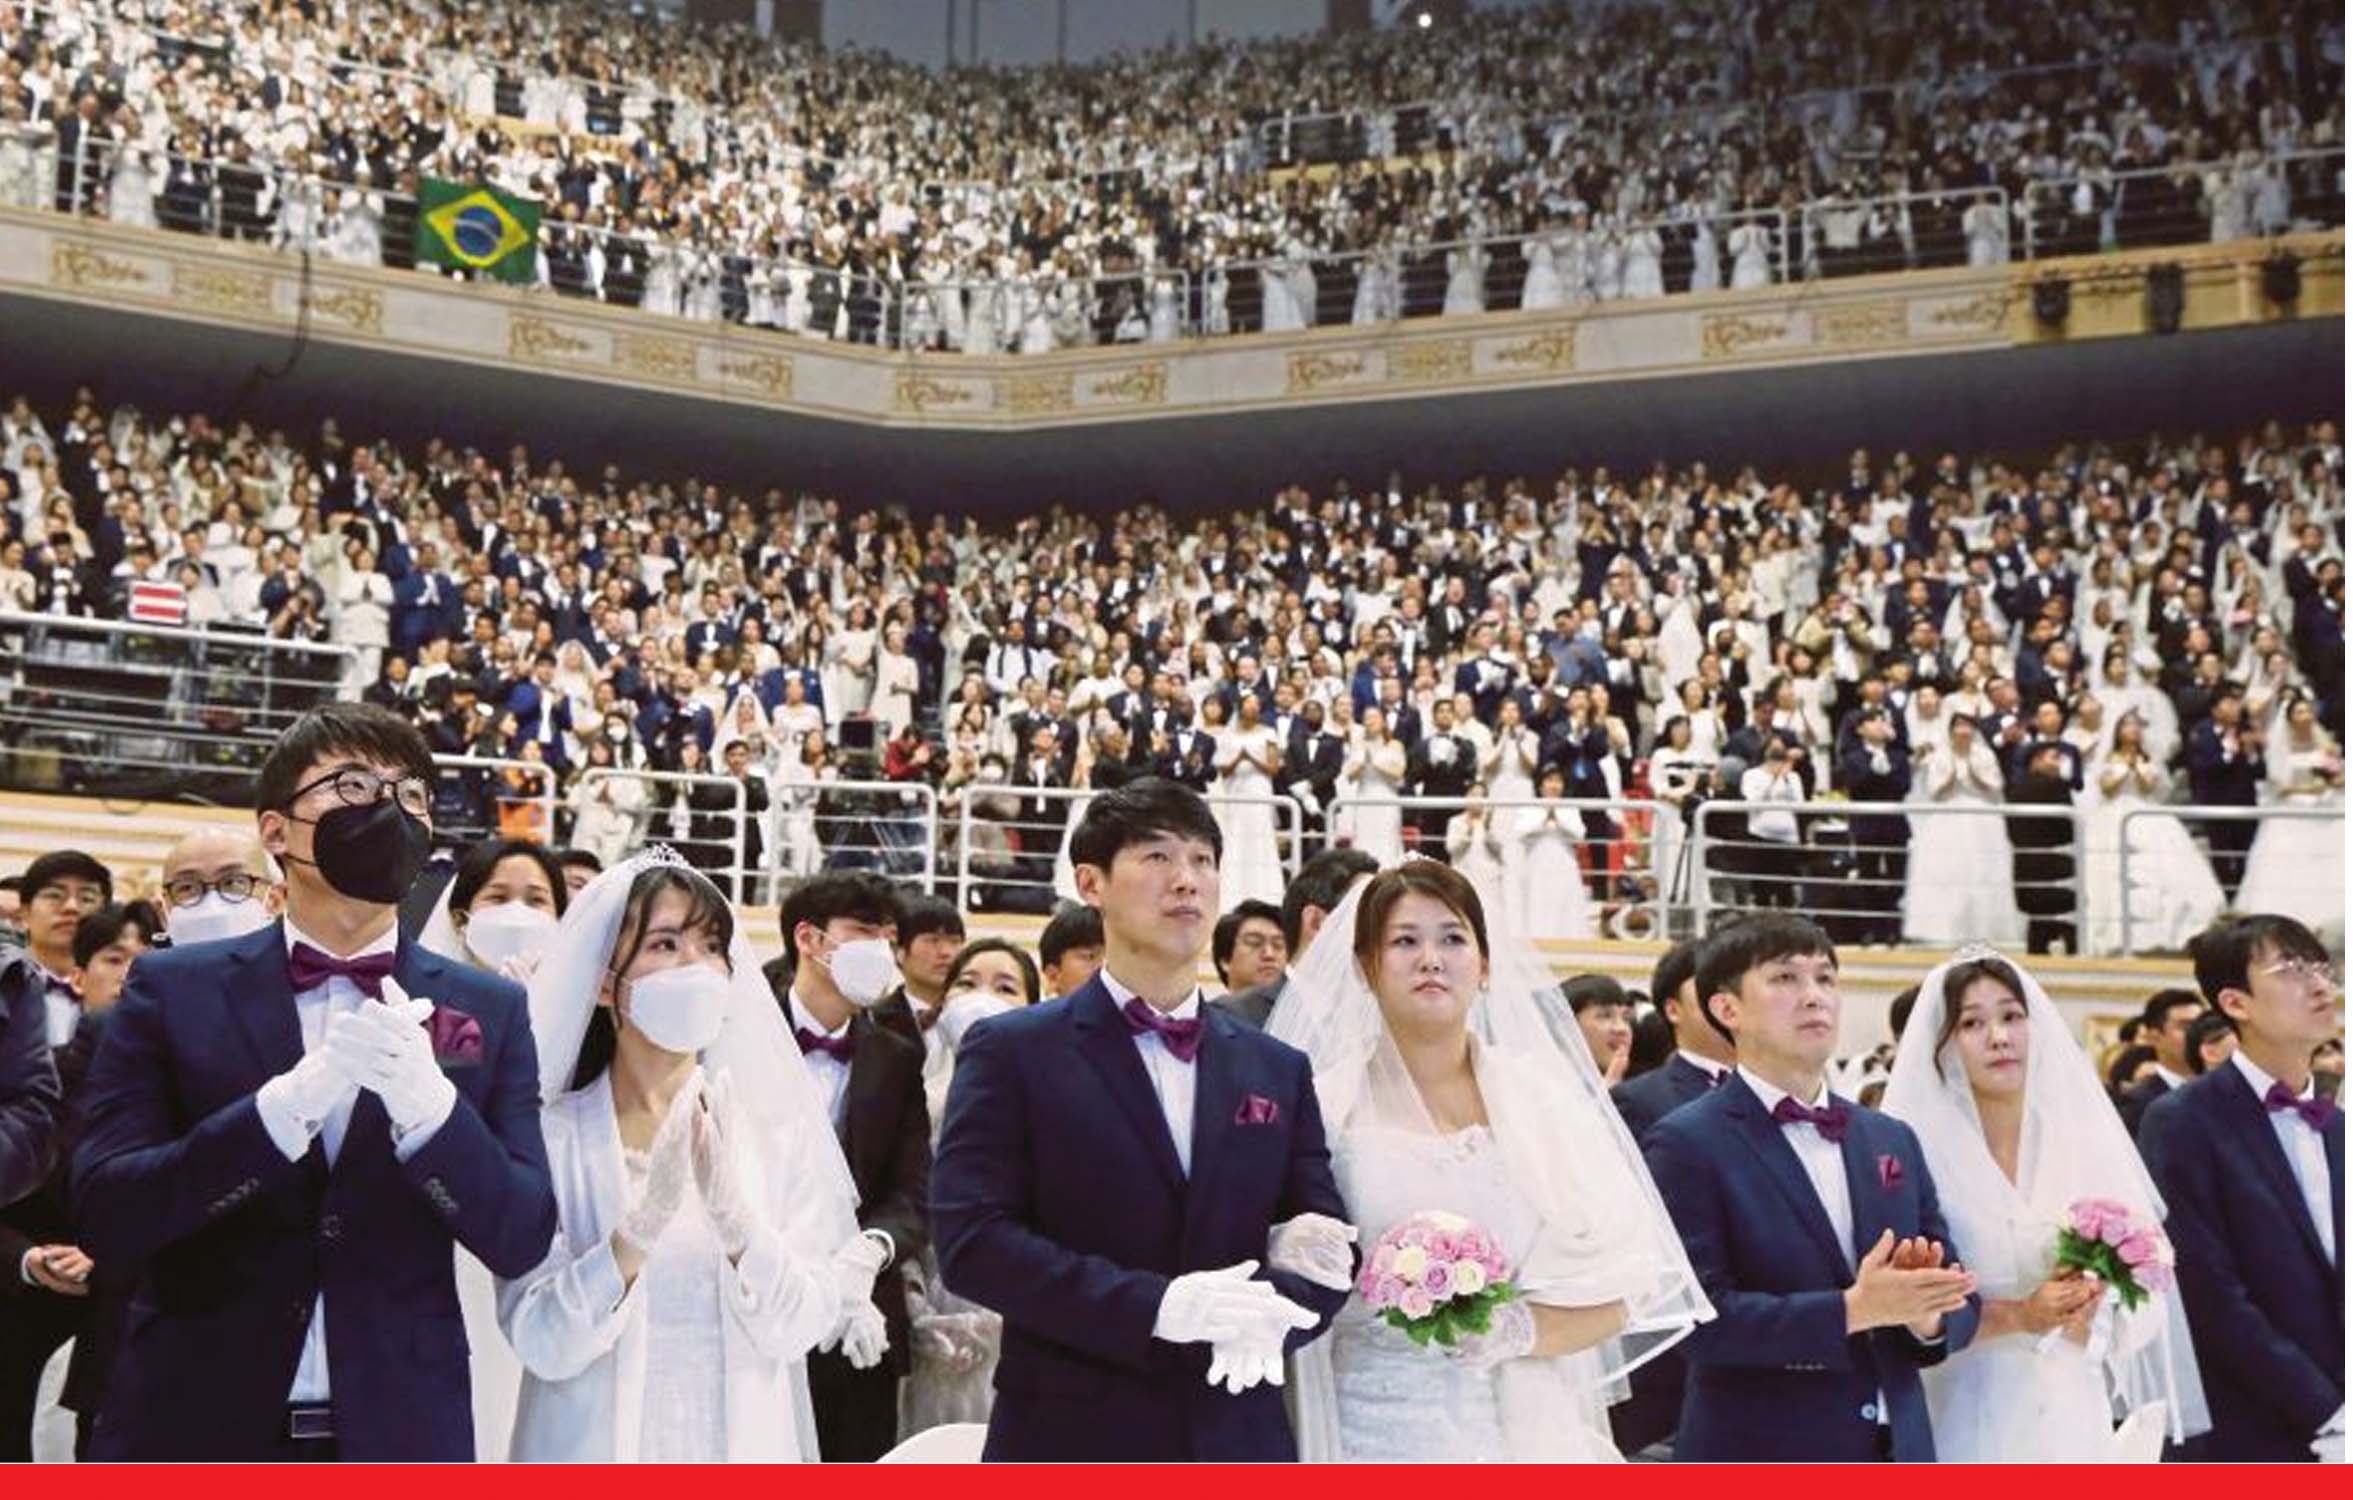 दक्षिण कोरिया: जहां शादी के लिए पैसे देकर मेहमान बुलाने पड़ते हैं